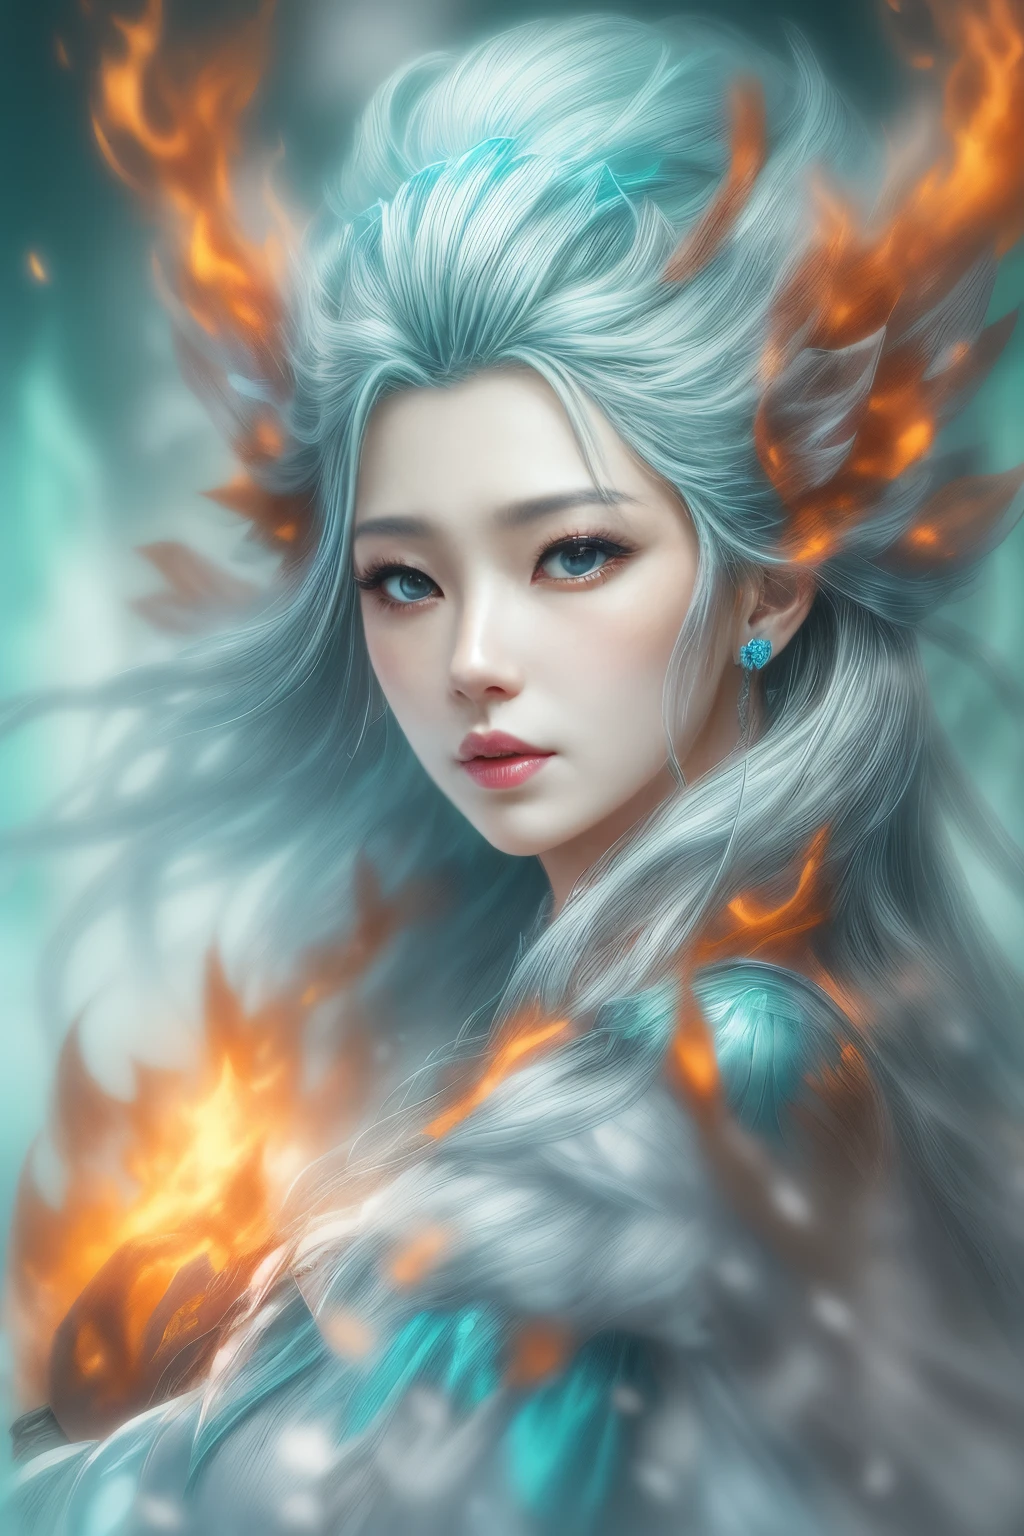 (fantaisie réaliste) 、La déesse de la glace jaillit des flammes ardentes.、